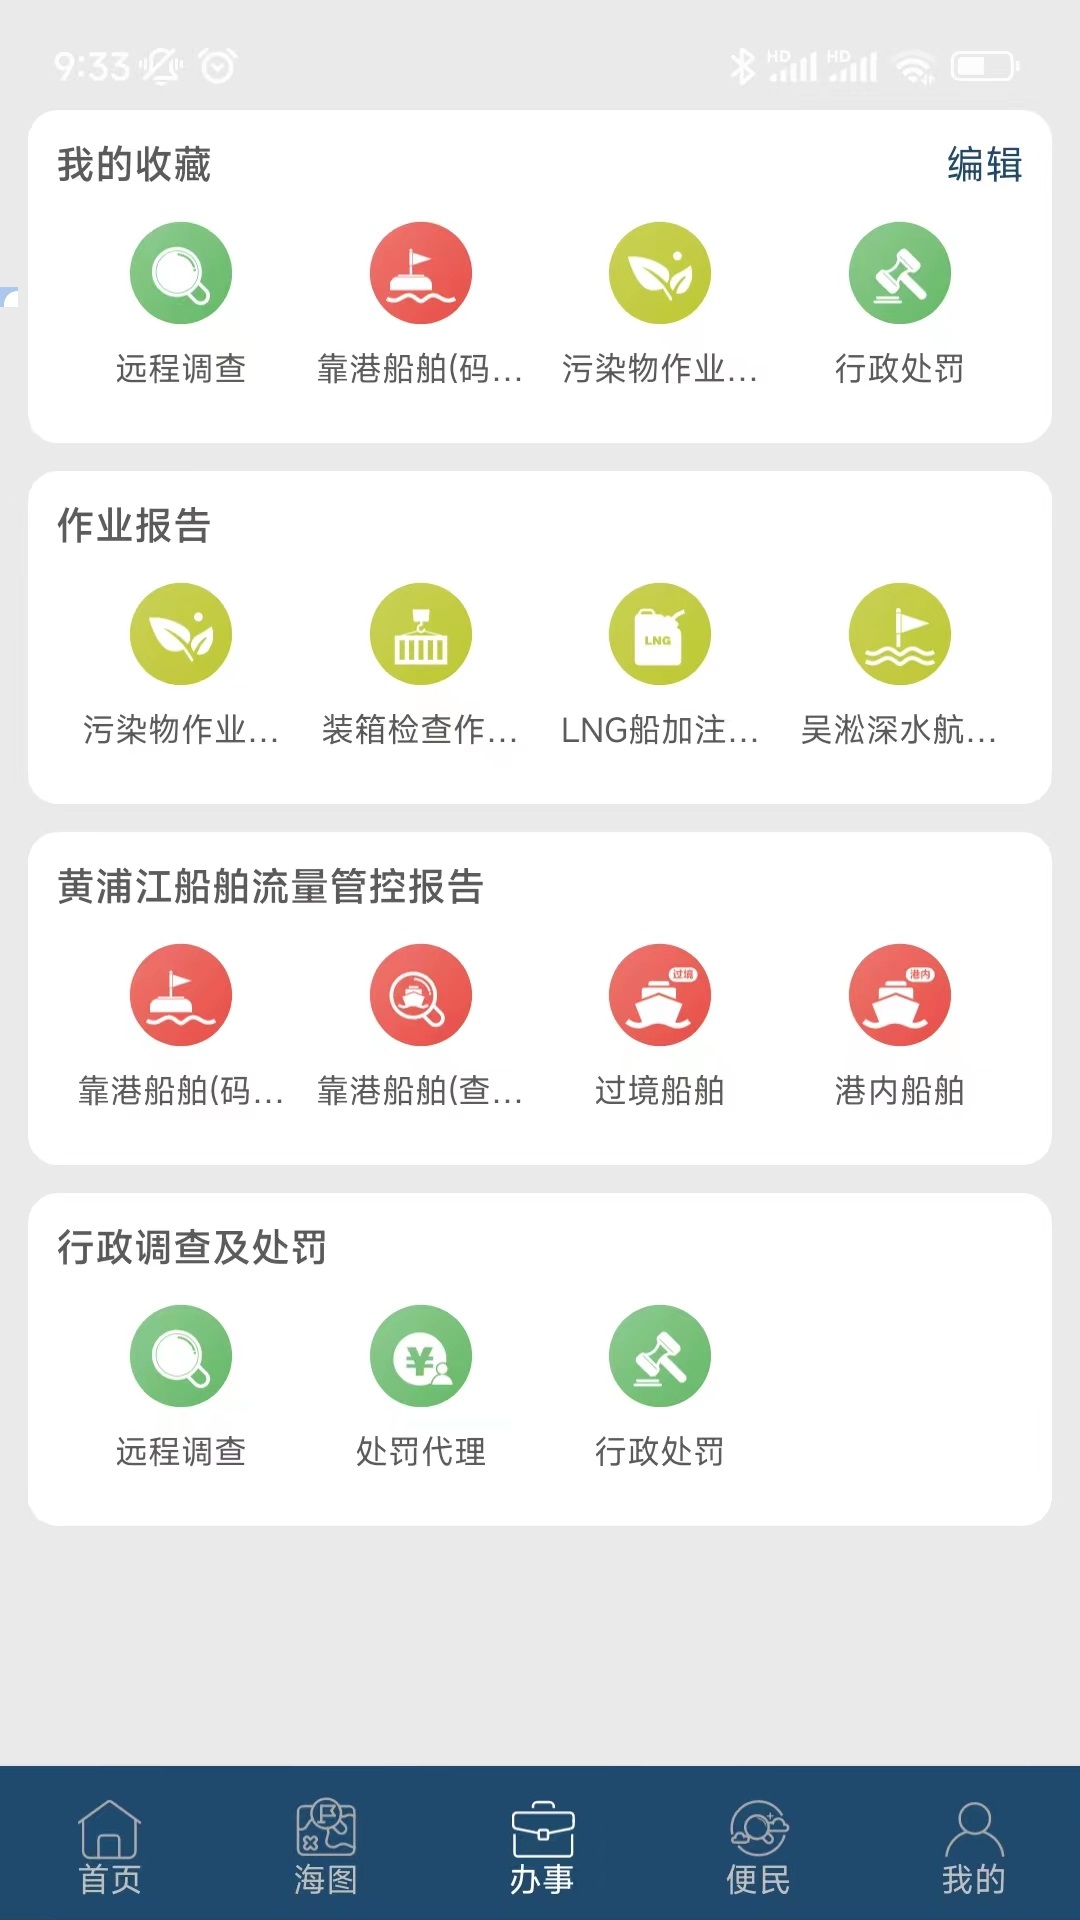 上海海上通app安卓版